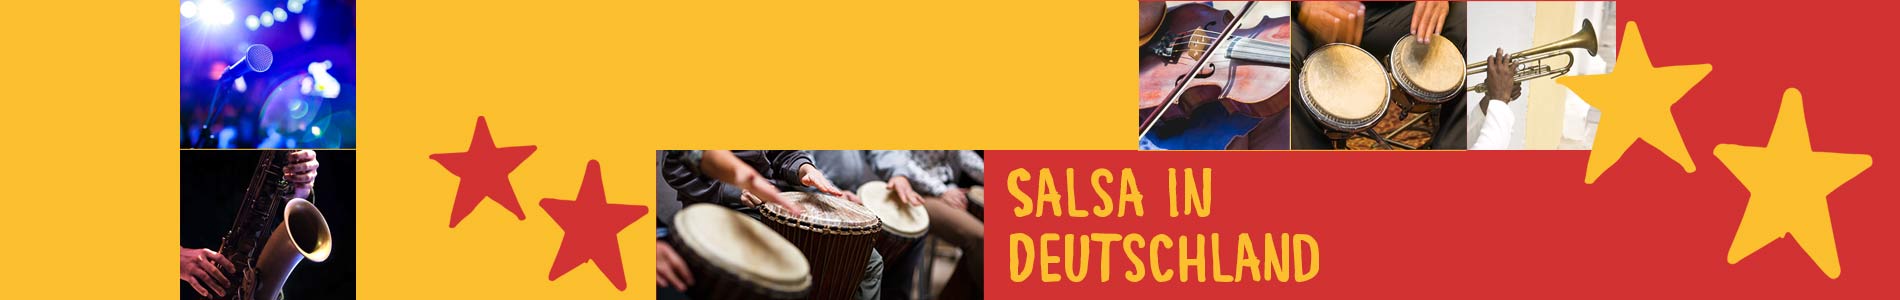 Salsa in Broderstorf – Salsa lernen und tanzen, Tanzkurse, Partys, Veranstaltungen